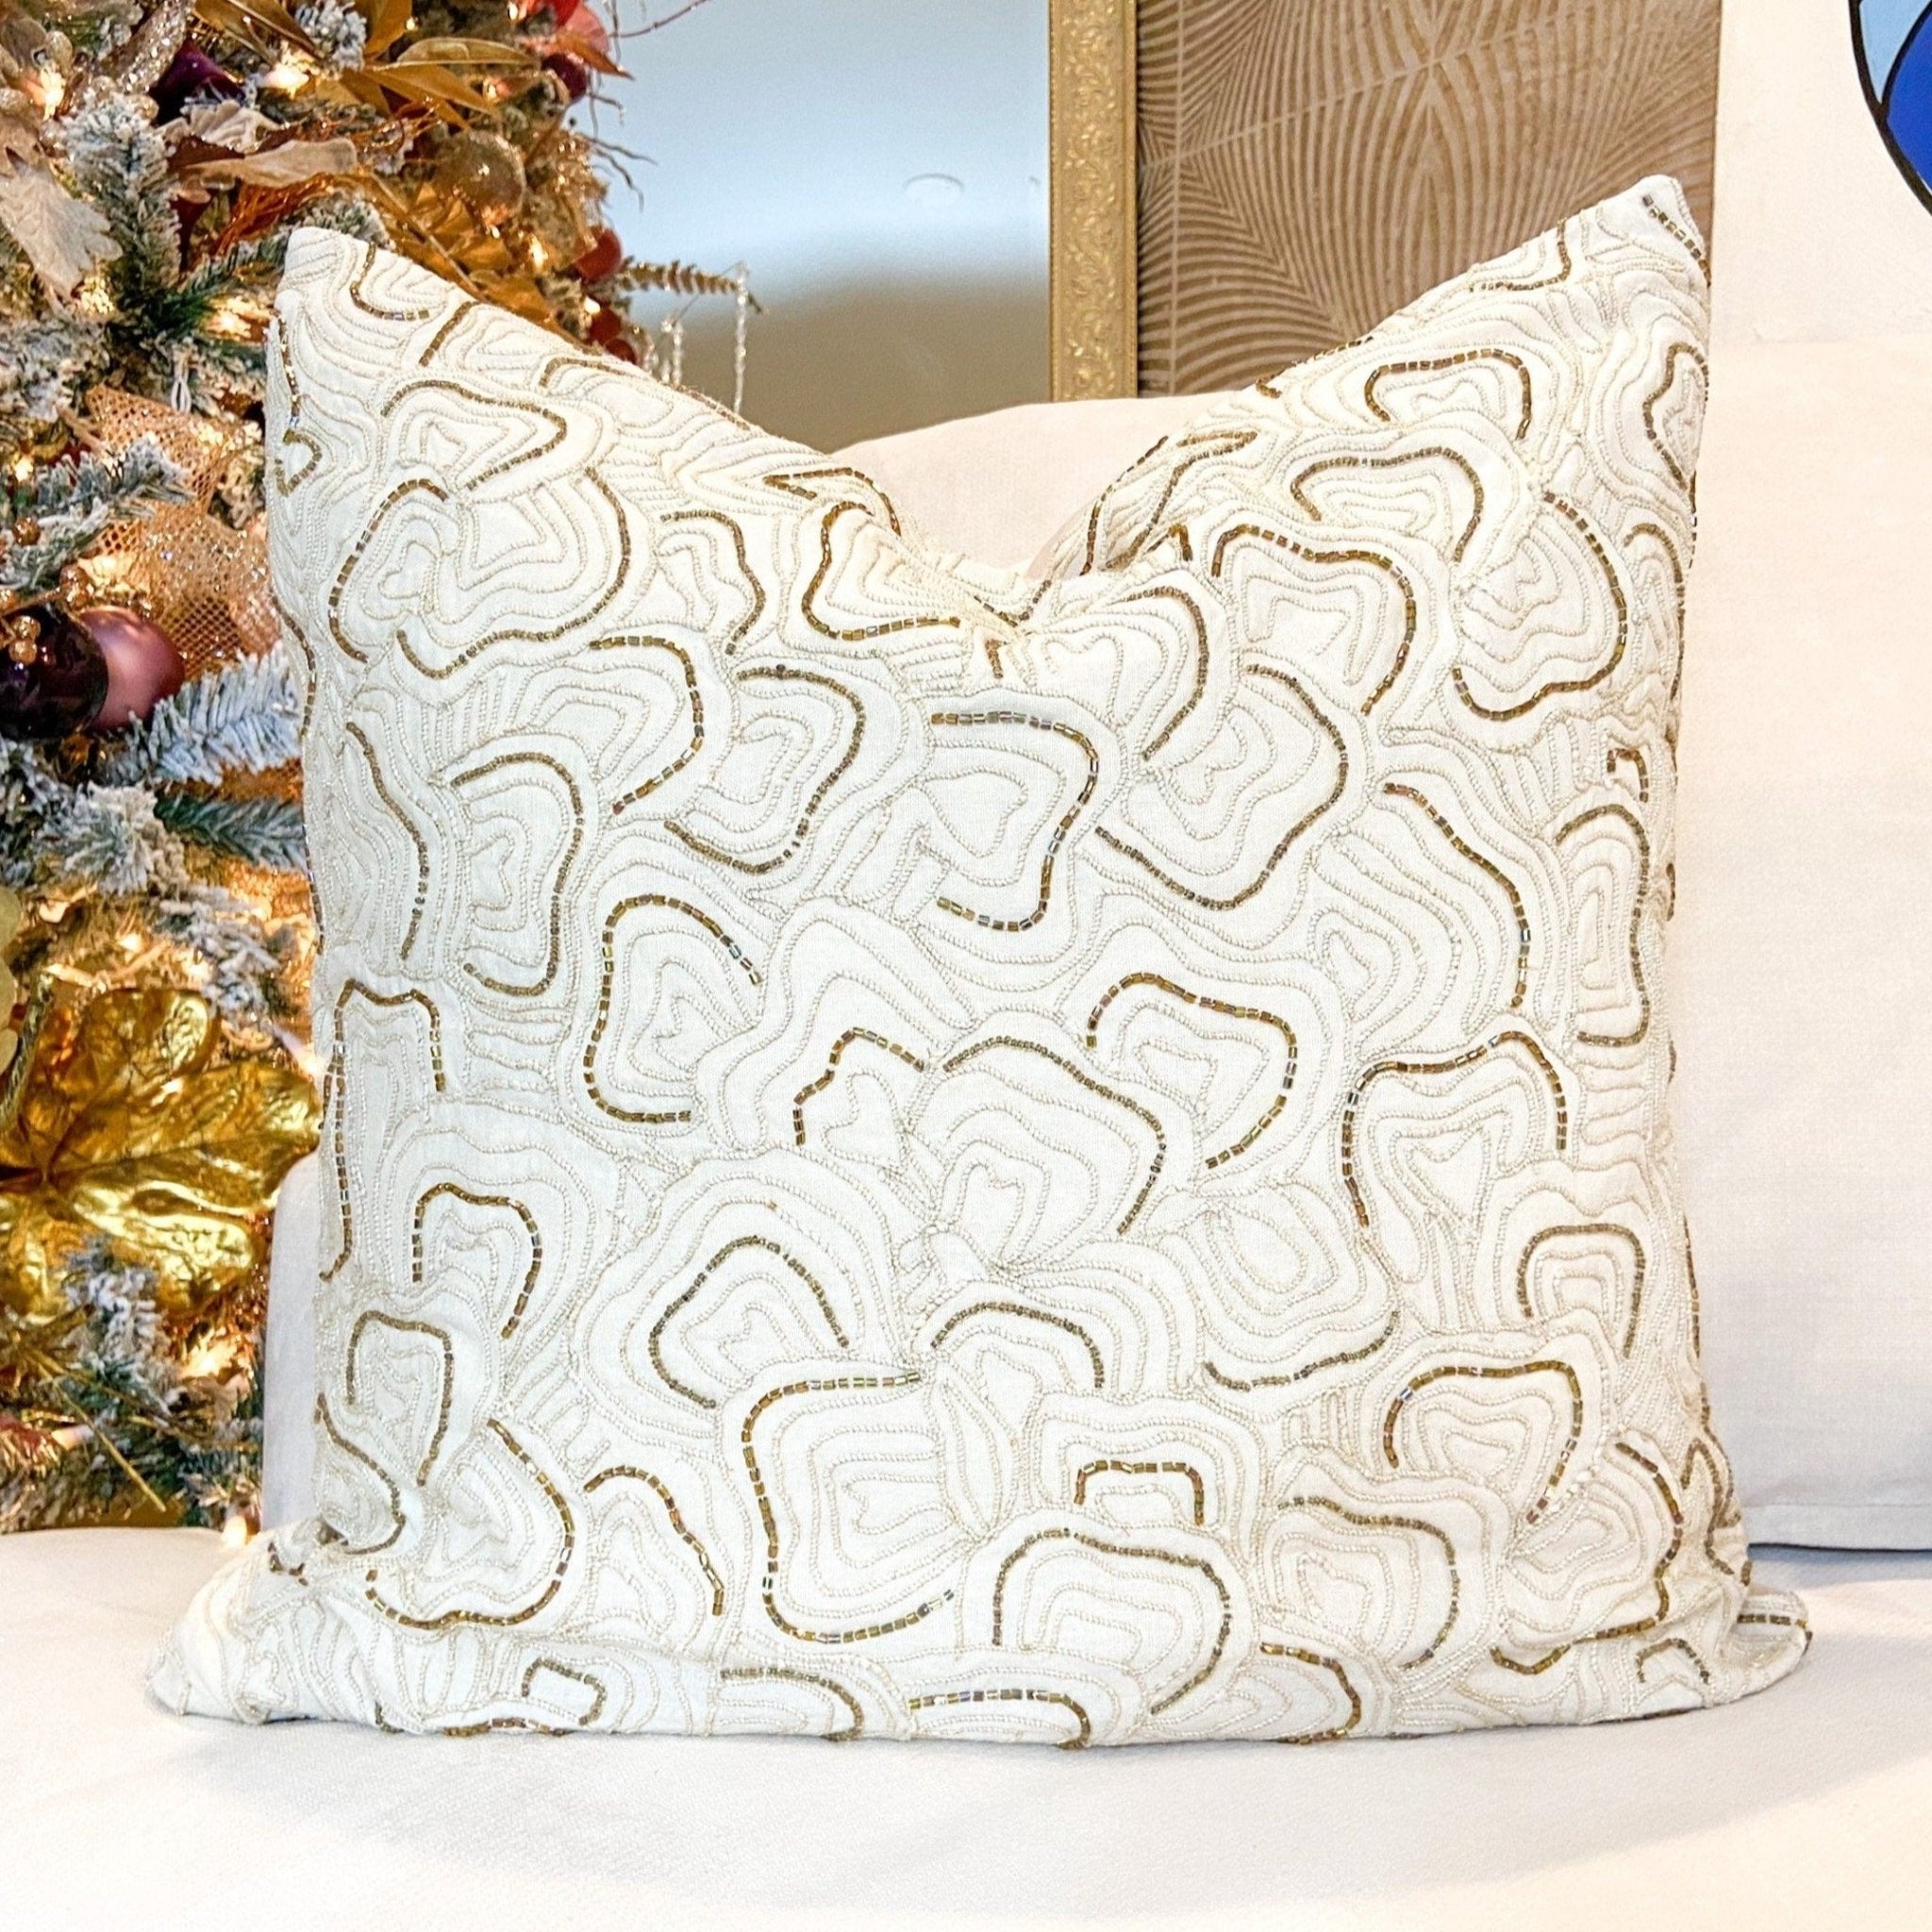 Glam Pillow Cover | Luxury Ivory Beaded Velvet Pillow | 20x20 Pillow Cover | Metallic Pillow | Decorative Pillow | Accent Pillow |Housewarming Gift - DiamondValeDecor